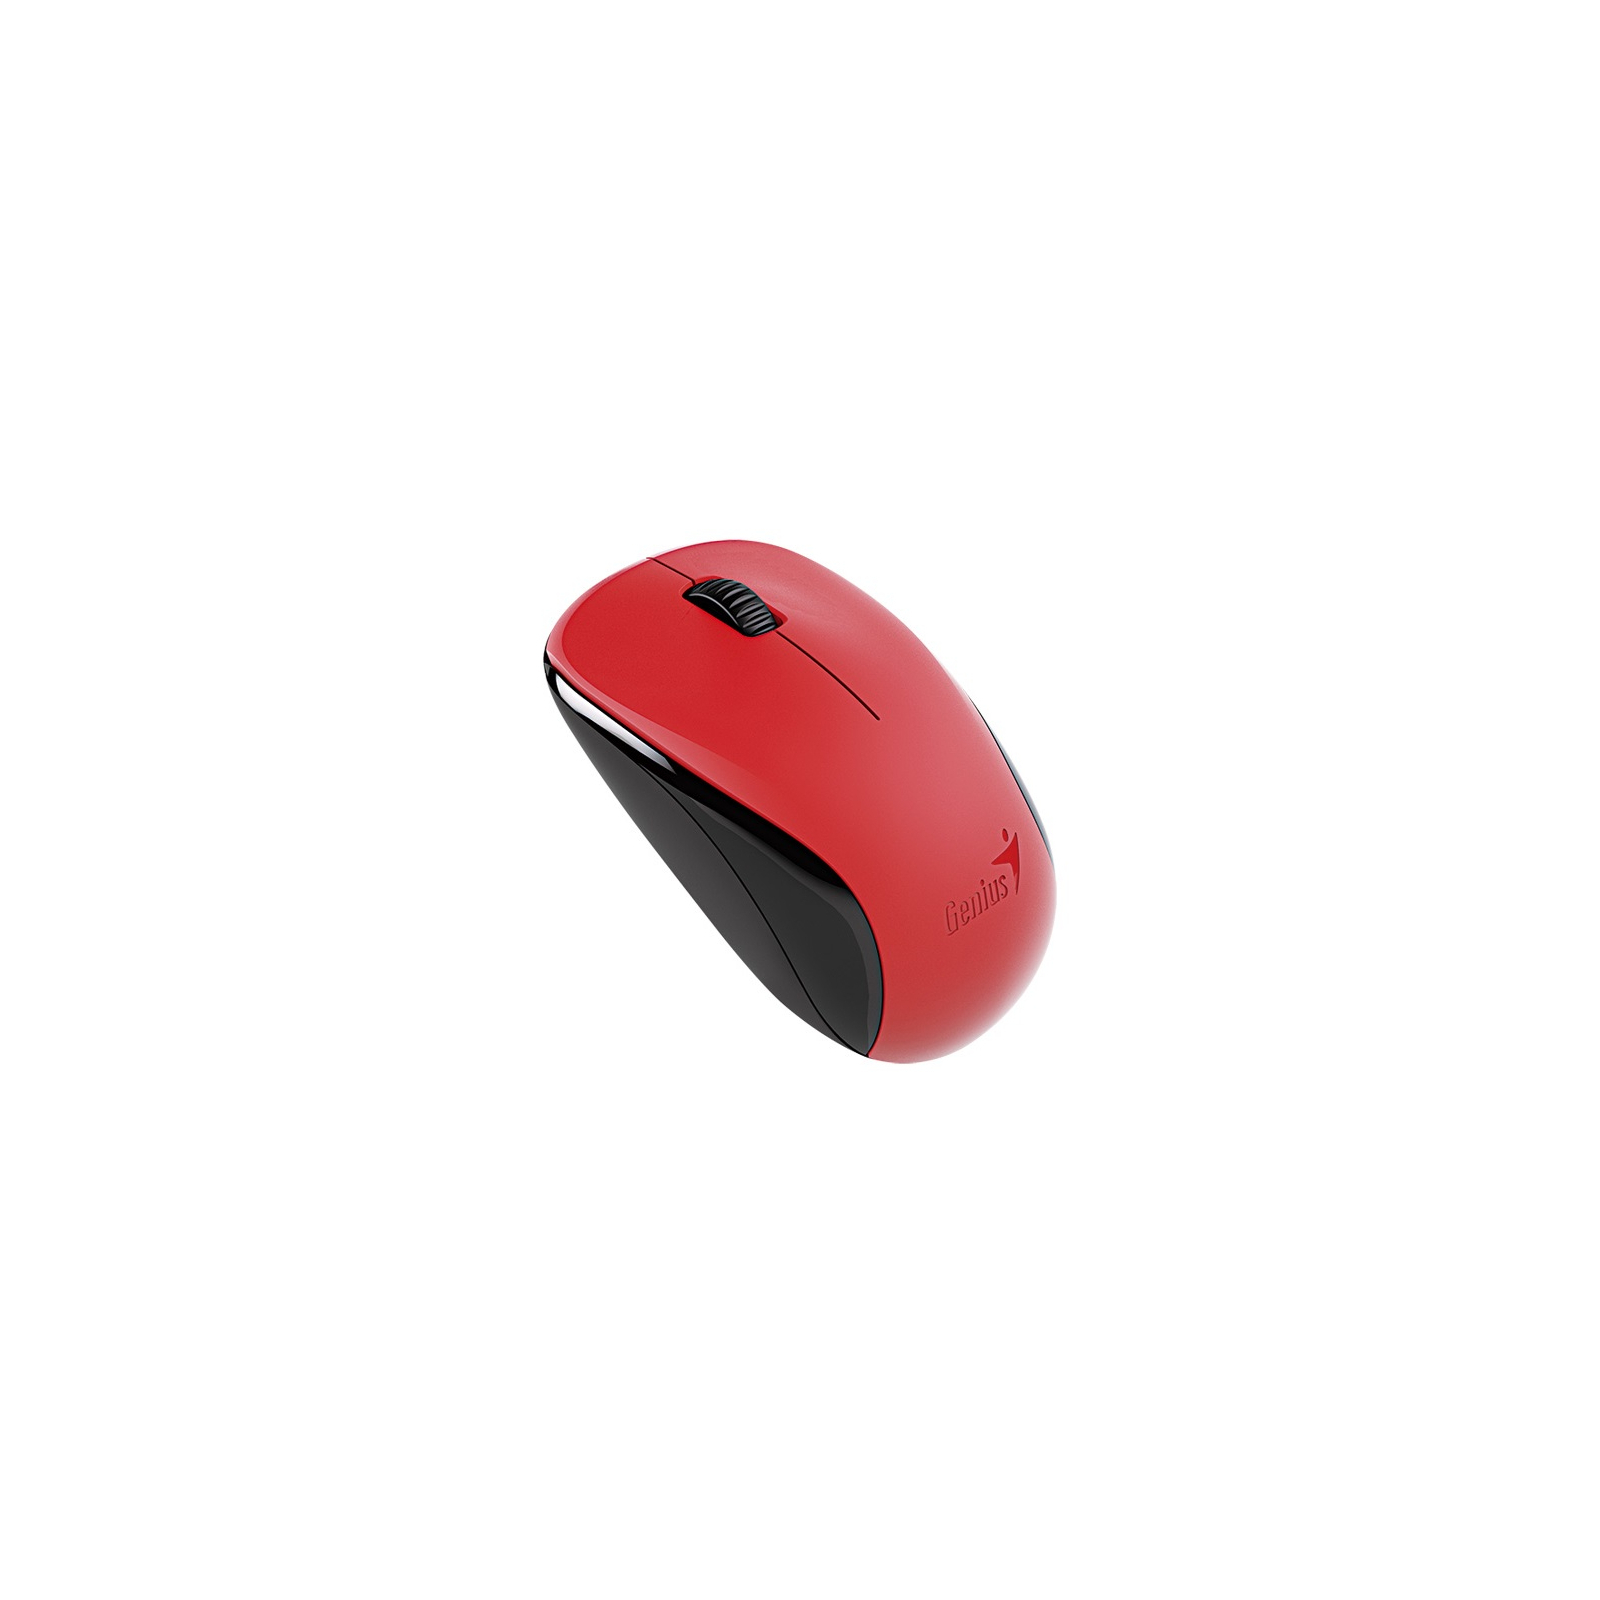 Мишка Genius NX-7000 Wireless Red (31030027403)